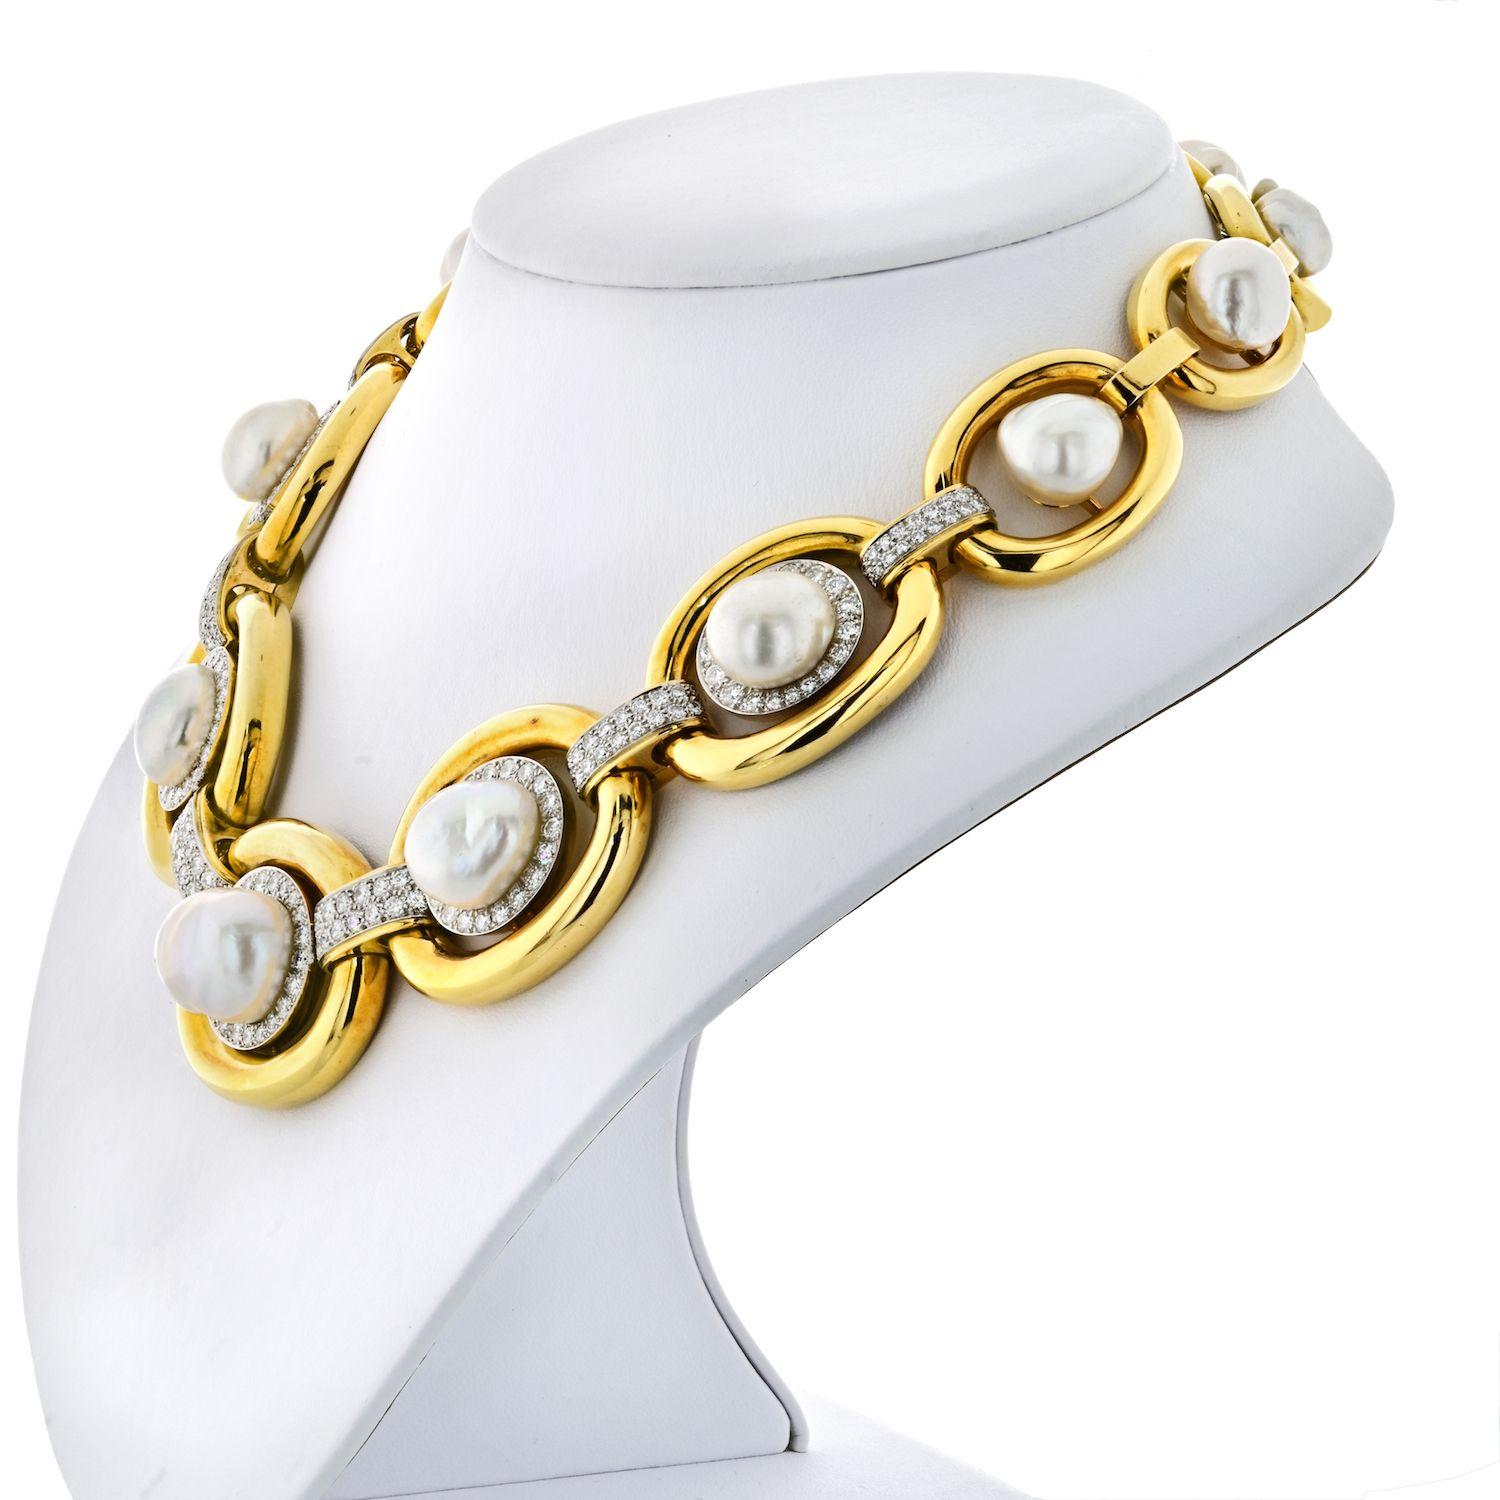 Le collier à maillons ovales ouverts en or jaune David Webb avec perles et diamants mettra en valeur n'importe quelle tenue. De grands maillons en or avec une finition polie et une touche de diamants autour des perles avant et entre les stations